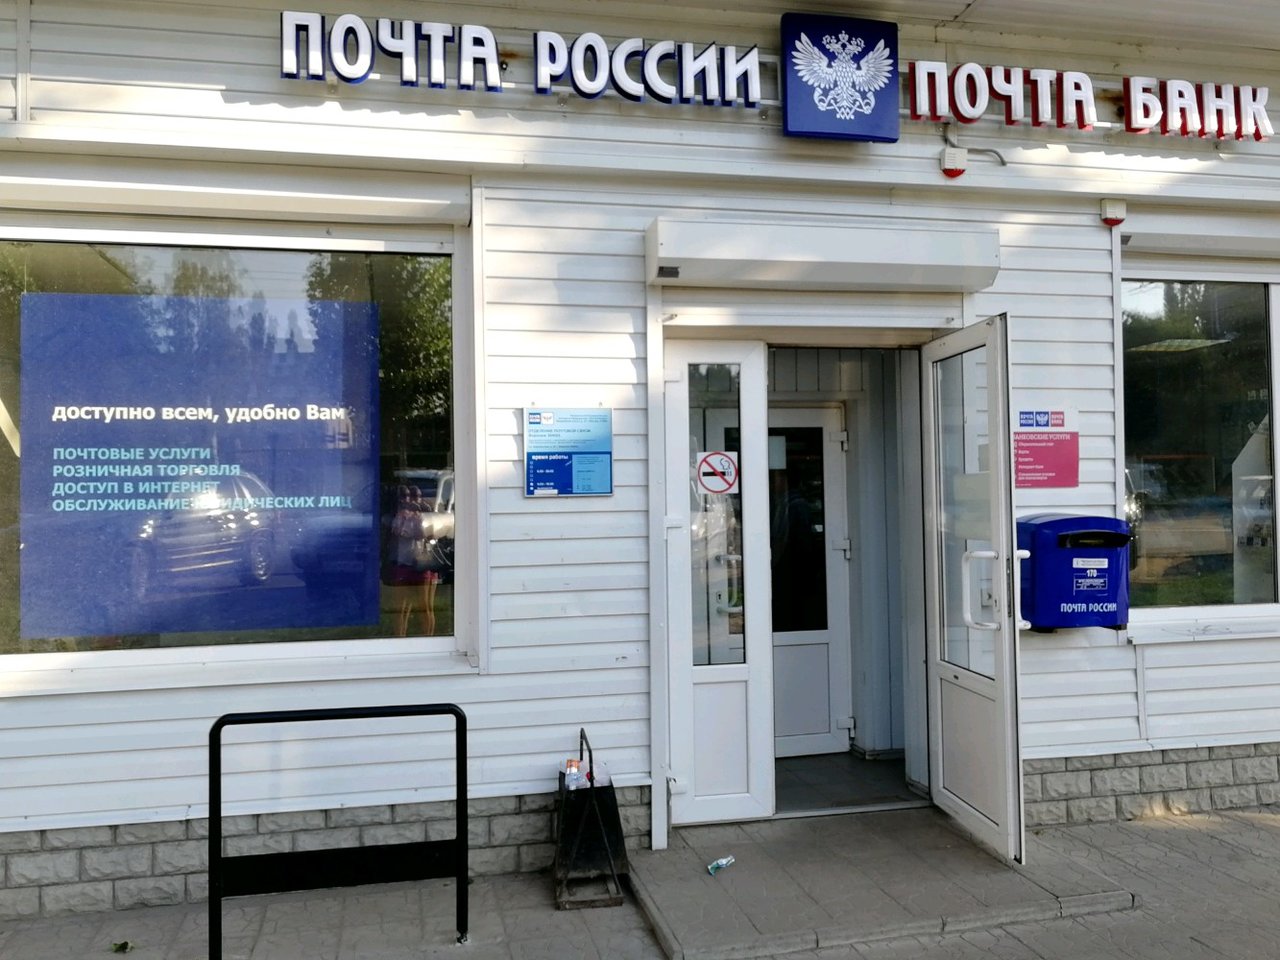 Почта банк обмен валюты воронеж производители майнеров